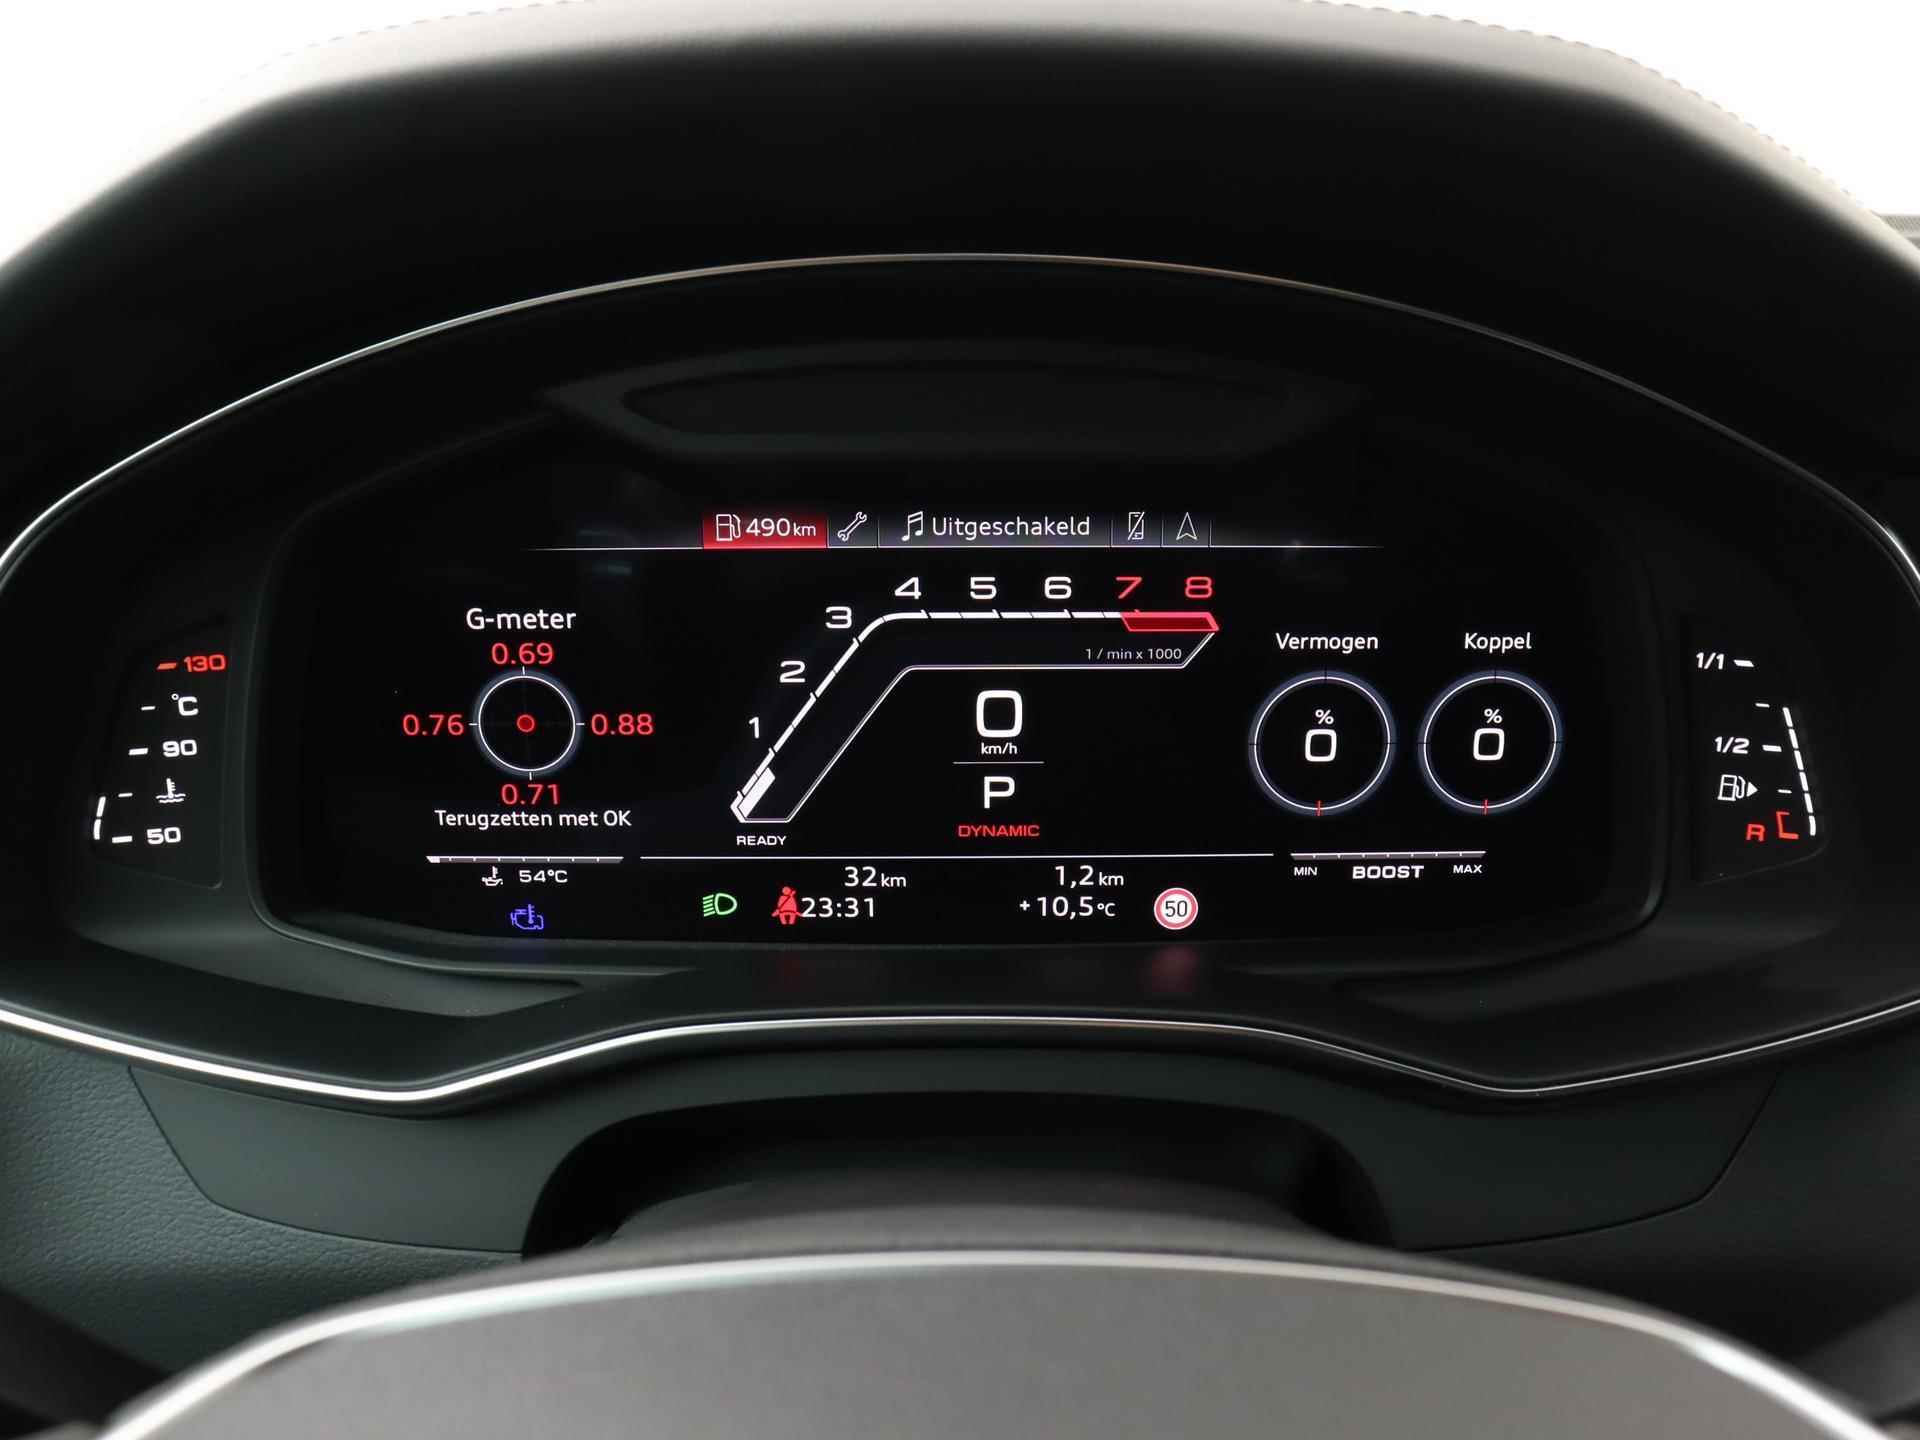 Audi RS6 TFSI quattro 600 PK | Head-up display | Bang & Olufsen Soundsystem | 22 inch lm velgen | RS Dynamic Pakket Plus | RS Design pakket Rood |Optiekpakket Zwart Plus | Panorama dak | RS Sportuitlaat | Keramische remschijven Rood | RS Sportonderstel Plus | Servosluiting deuren | Nu € 36.129,- ACTIEKORTING! | DIRECT LEVERBAAR! | NIEUWE AUTO! | - 3/35